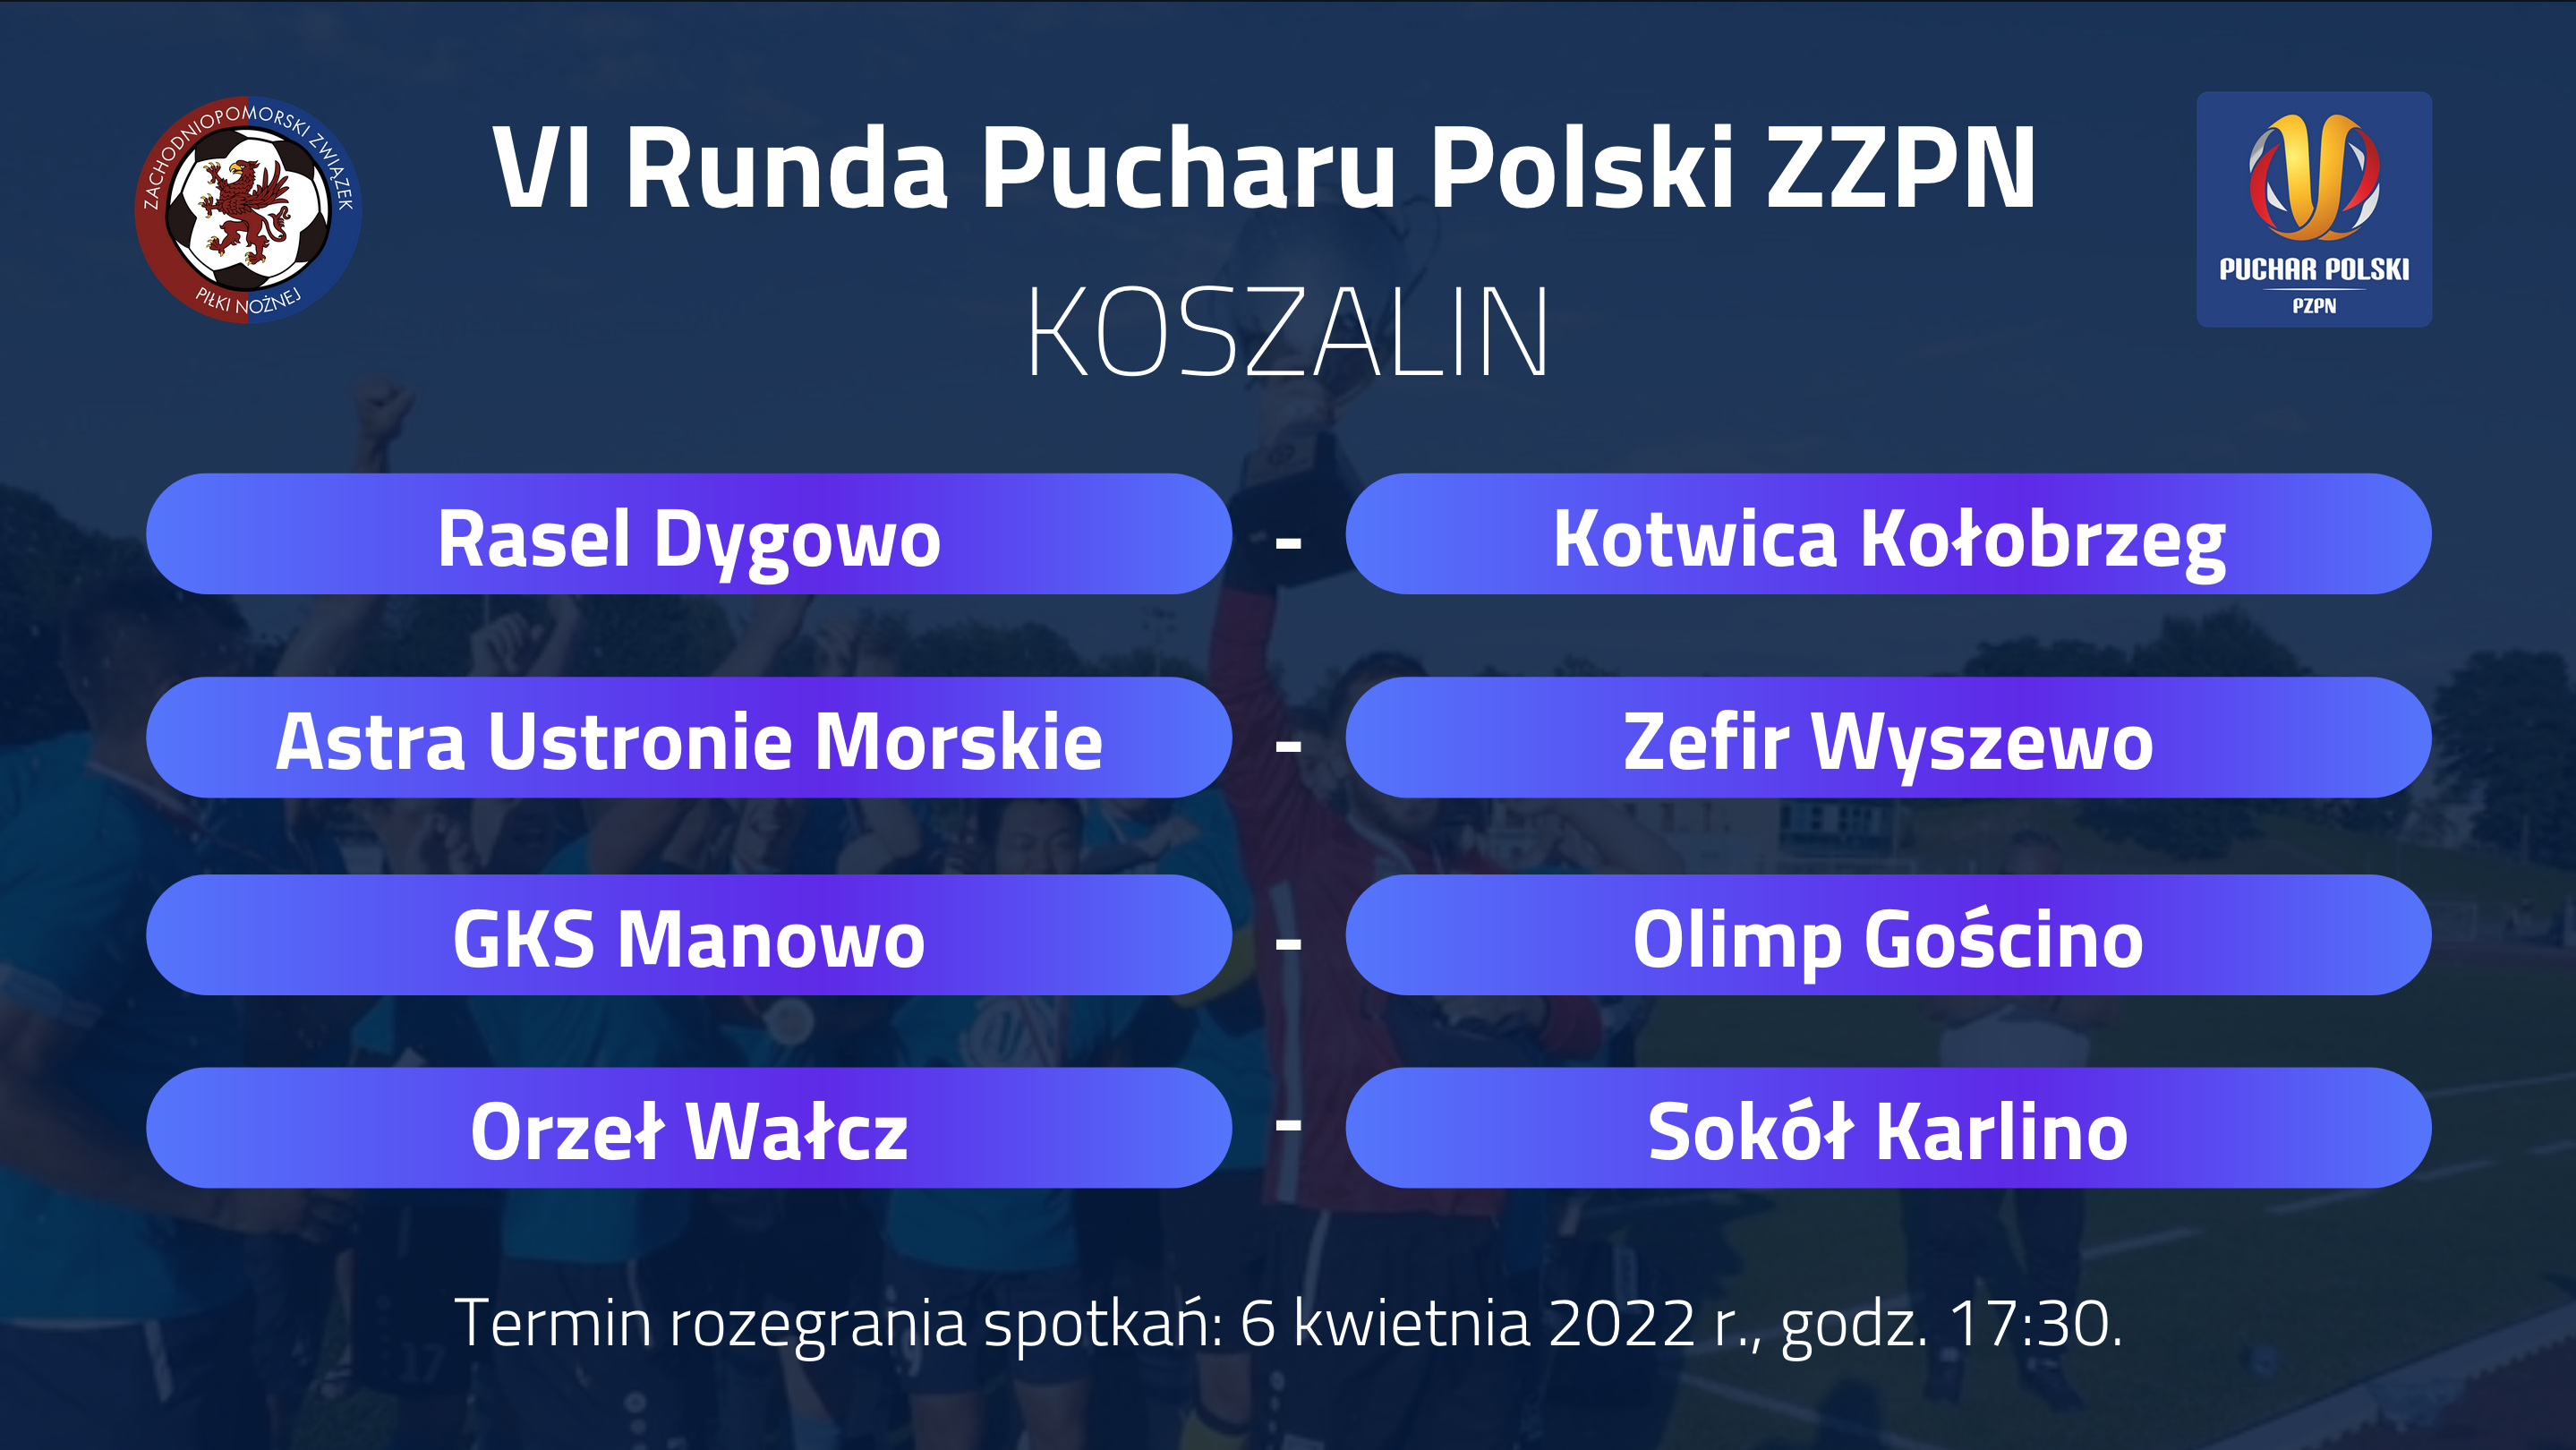 11 mar 22 wyniki losowania PP Koszalin